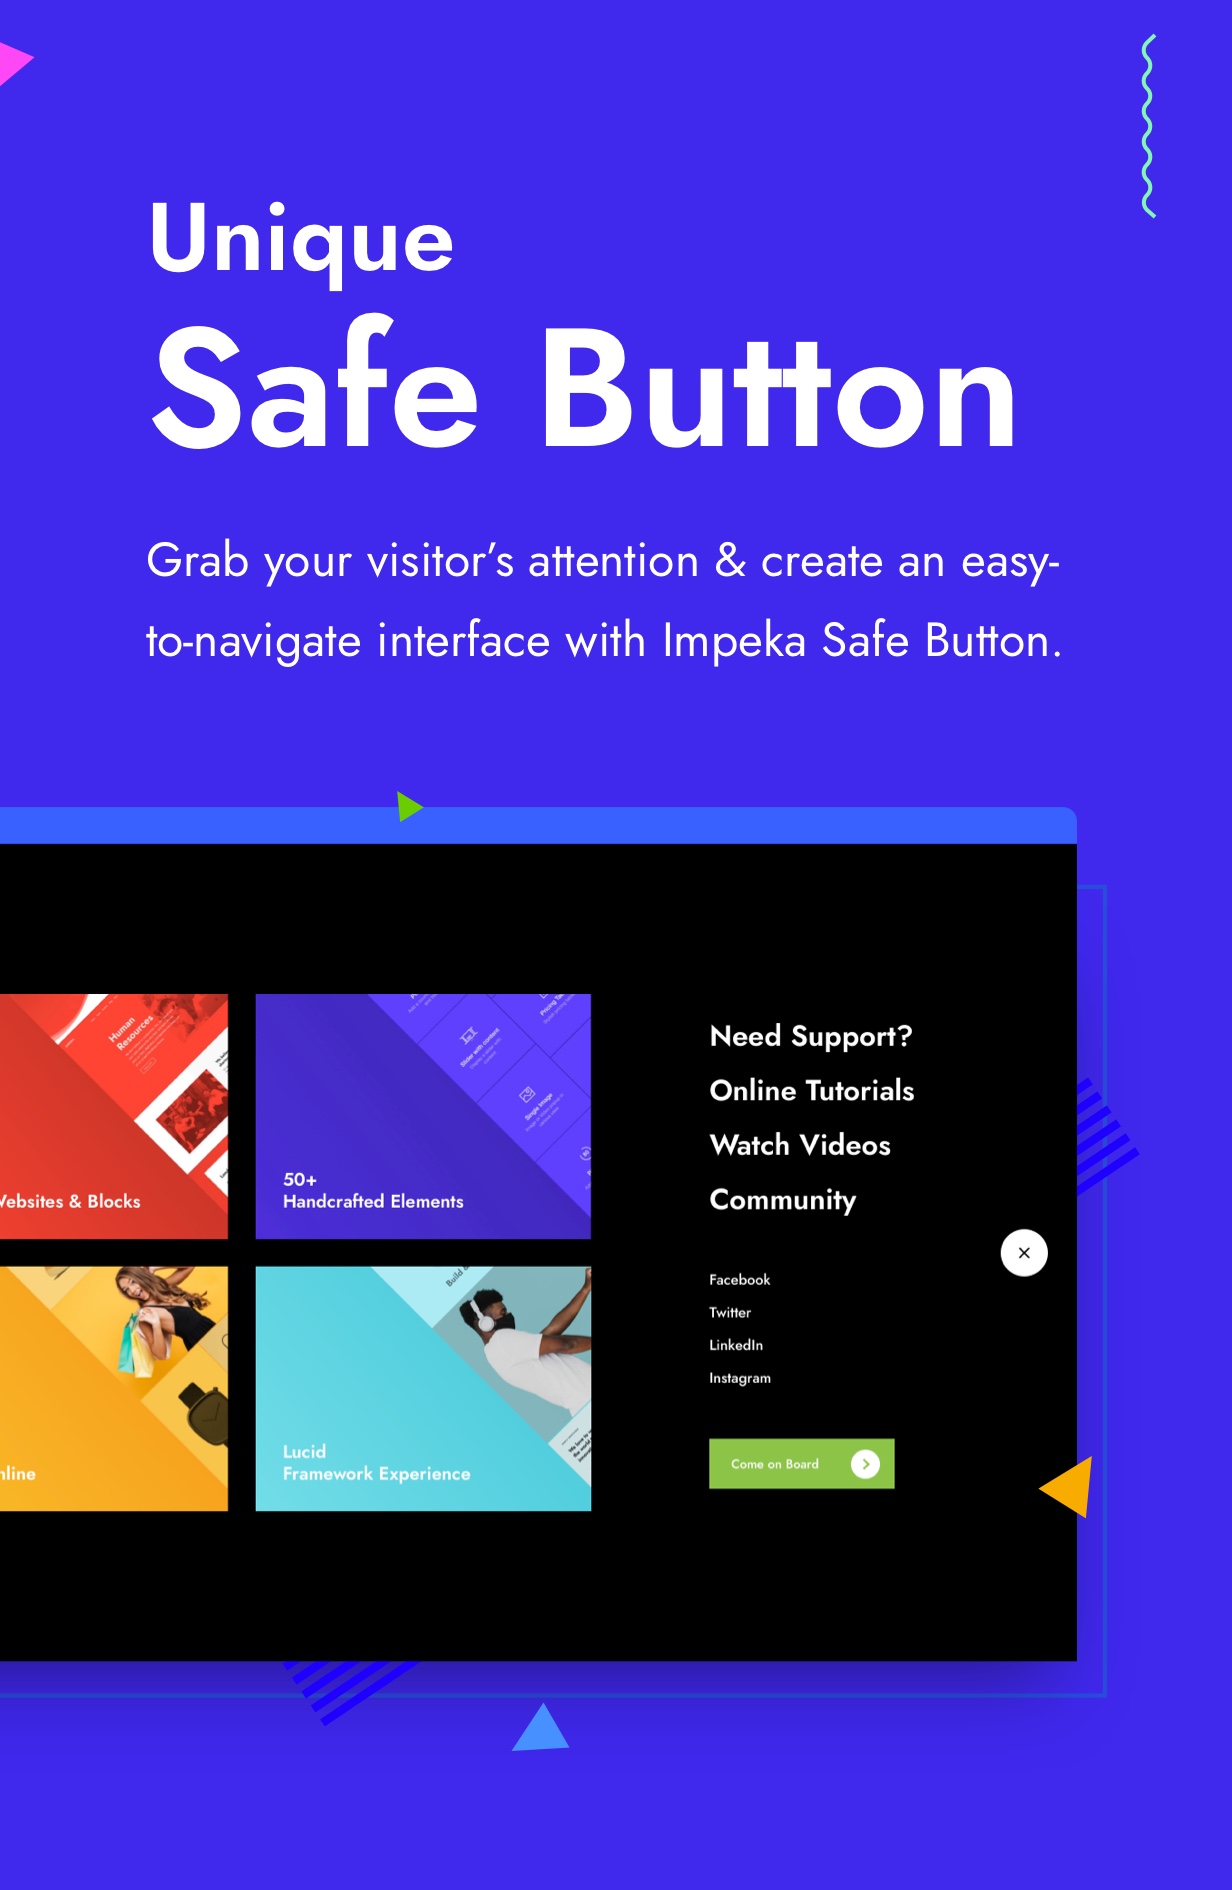 safebutton - Impeka - Creative Multi-Purpose WordPress Theme